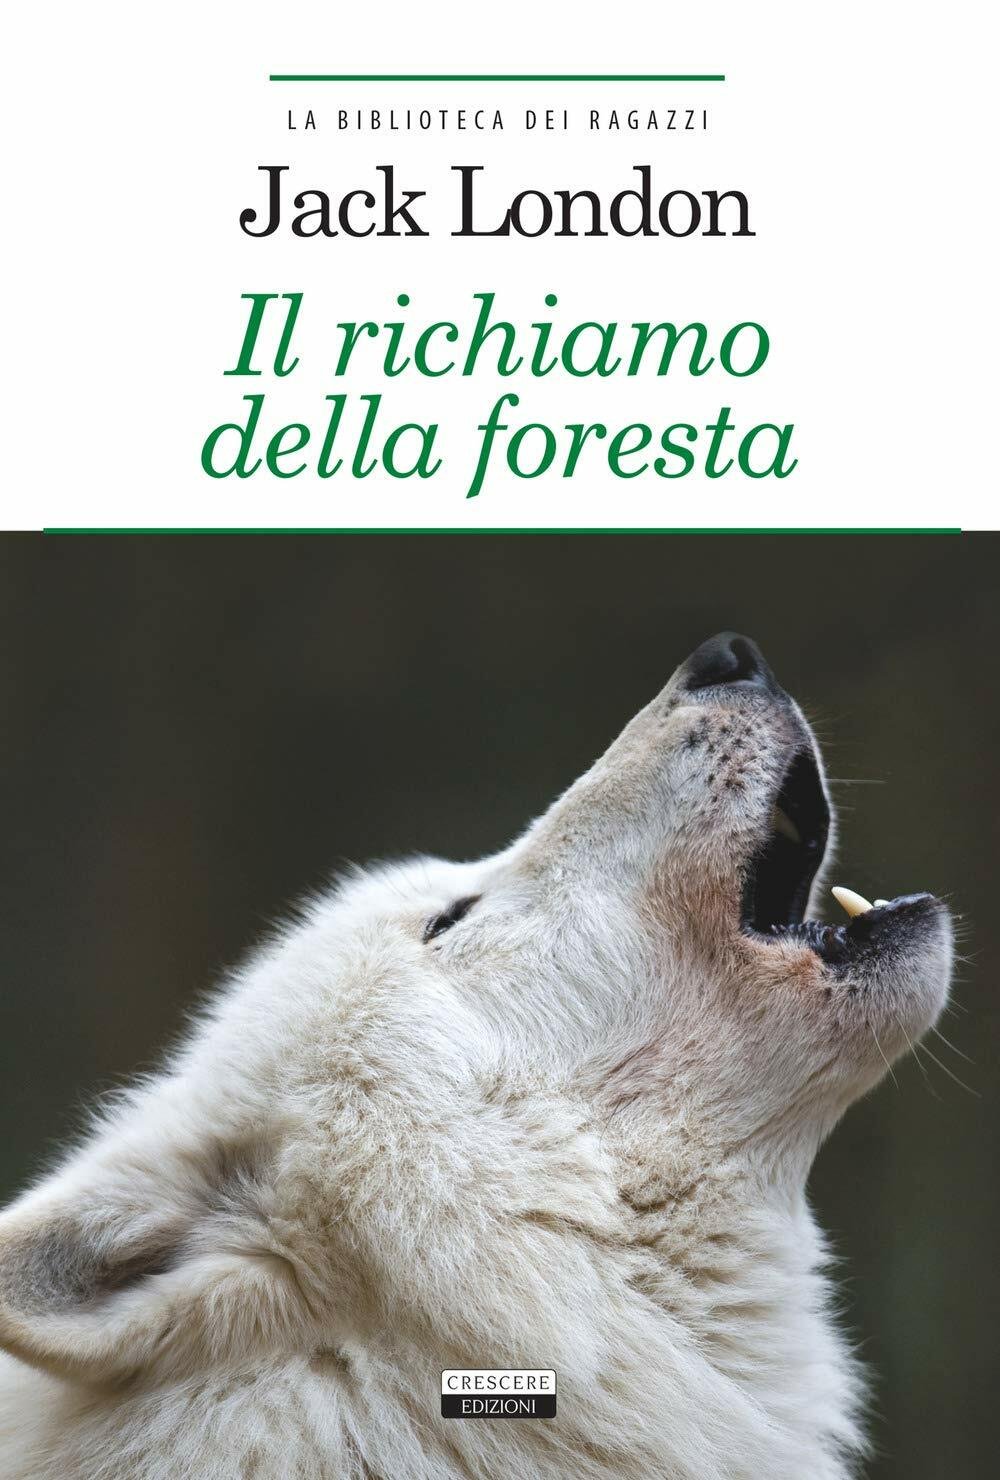 La copertina dell'edizione italiana del romanzo Il richiamo della foresta